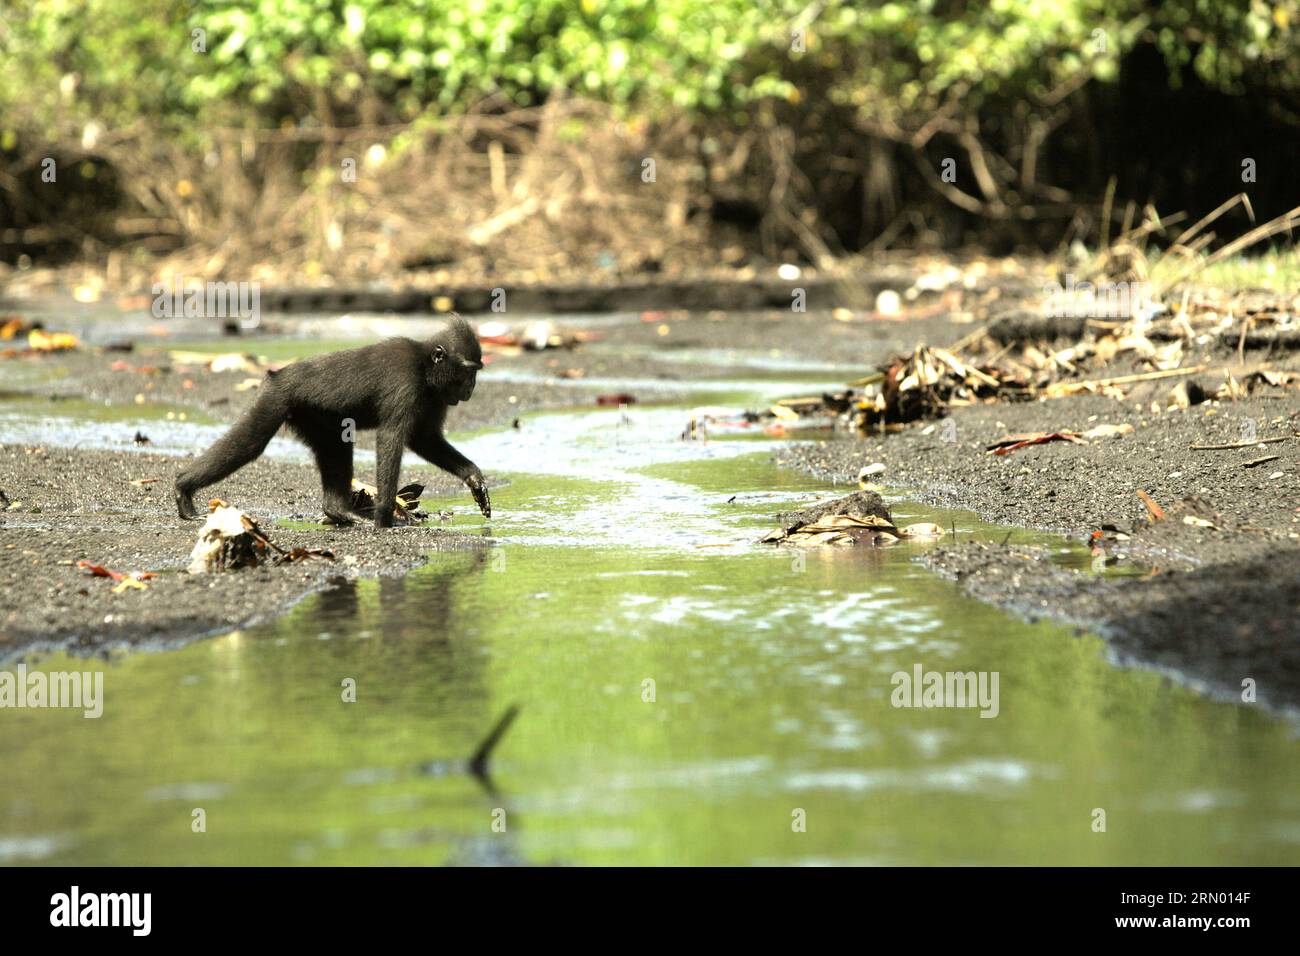 Ein Sulawesi-Makaken (Macaca nigra) mit schwarzer Haube ernährt sich auf einem Bach in der Nähe eines Strandes im Tangkoko-Wald, Nord-Sulawesi, Indonesien. Der natürliche Lebensraum dieser geschützten Art ist ein Tieflandwald, der sich vom Meeresspiegel bis auf eine Höhe von etwa 1.300 Metern erstreckt, mit einer Reichweite von etwa 2 Quadratkilometern nach Angaben von Primatenforschern. Klimawandel und Krankheiten sind neue Bedrohungen für Primaten, während Schopfmakaken zu den 10 % der Primatenarten gehören, die besonders anfällig für Dürren sind. Ein kürzlich erschienener Bericht hat gezeigt, dass die Temperatur im Tangkoko-Wald tatsächlich steigt, und die... Stockfoto